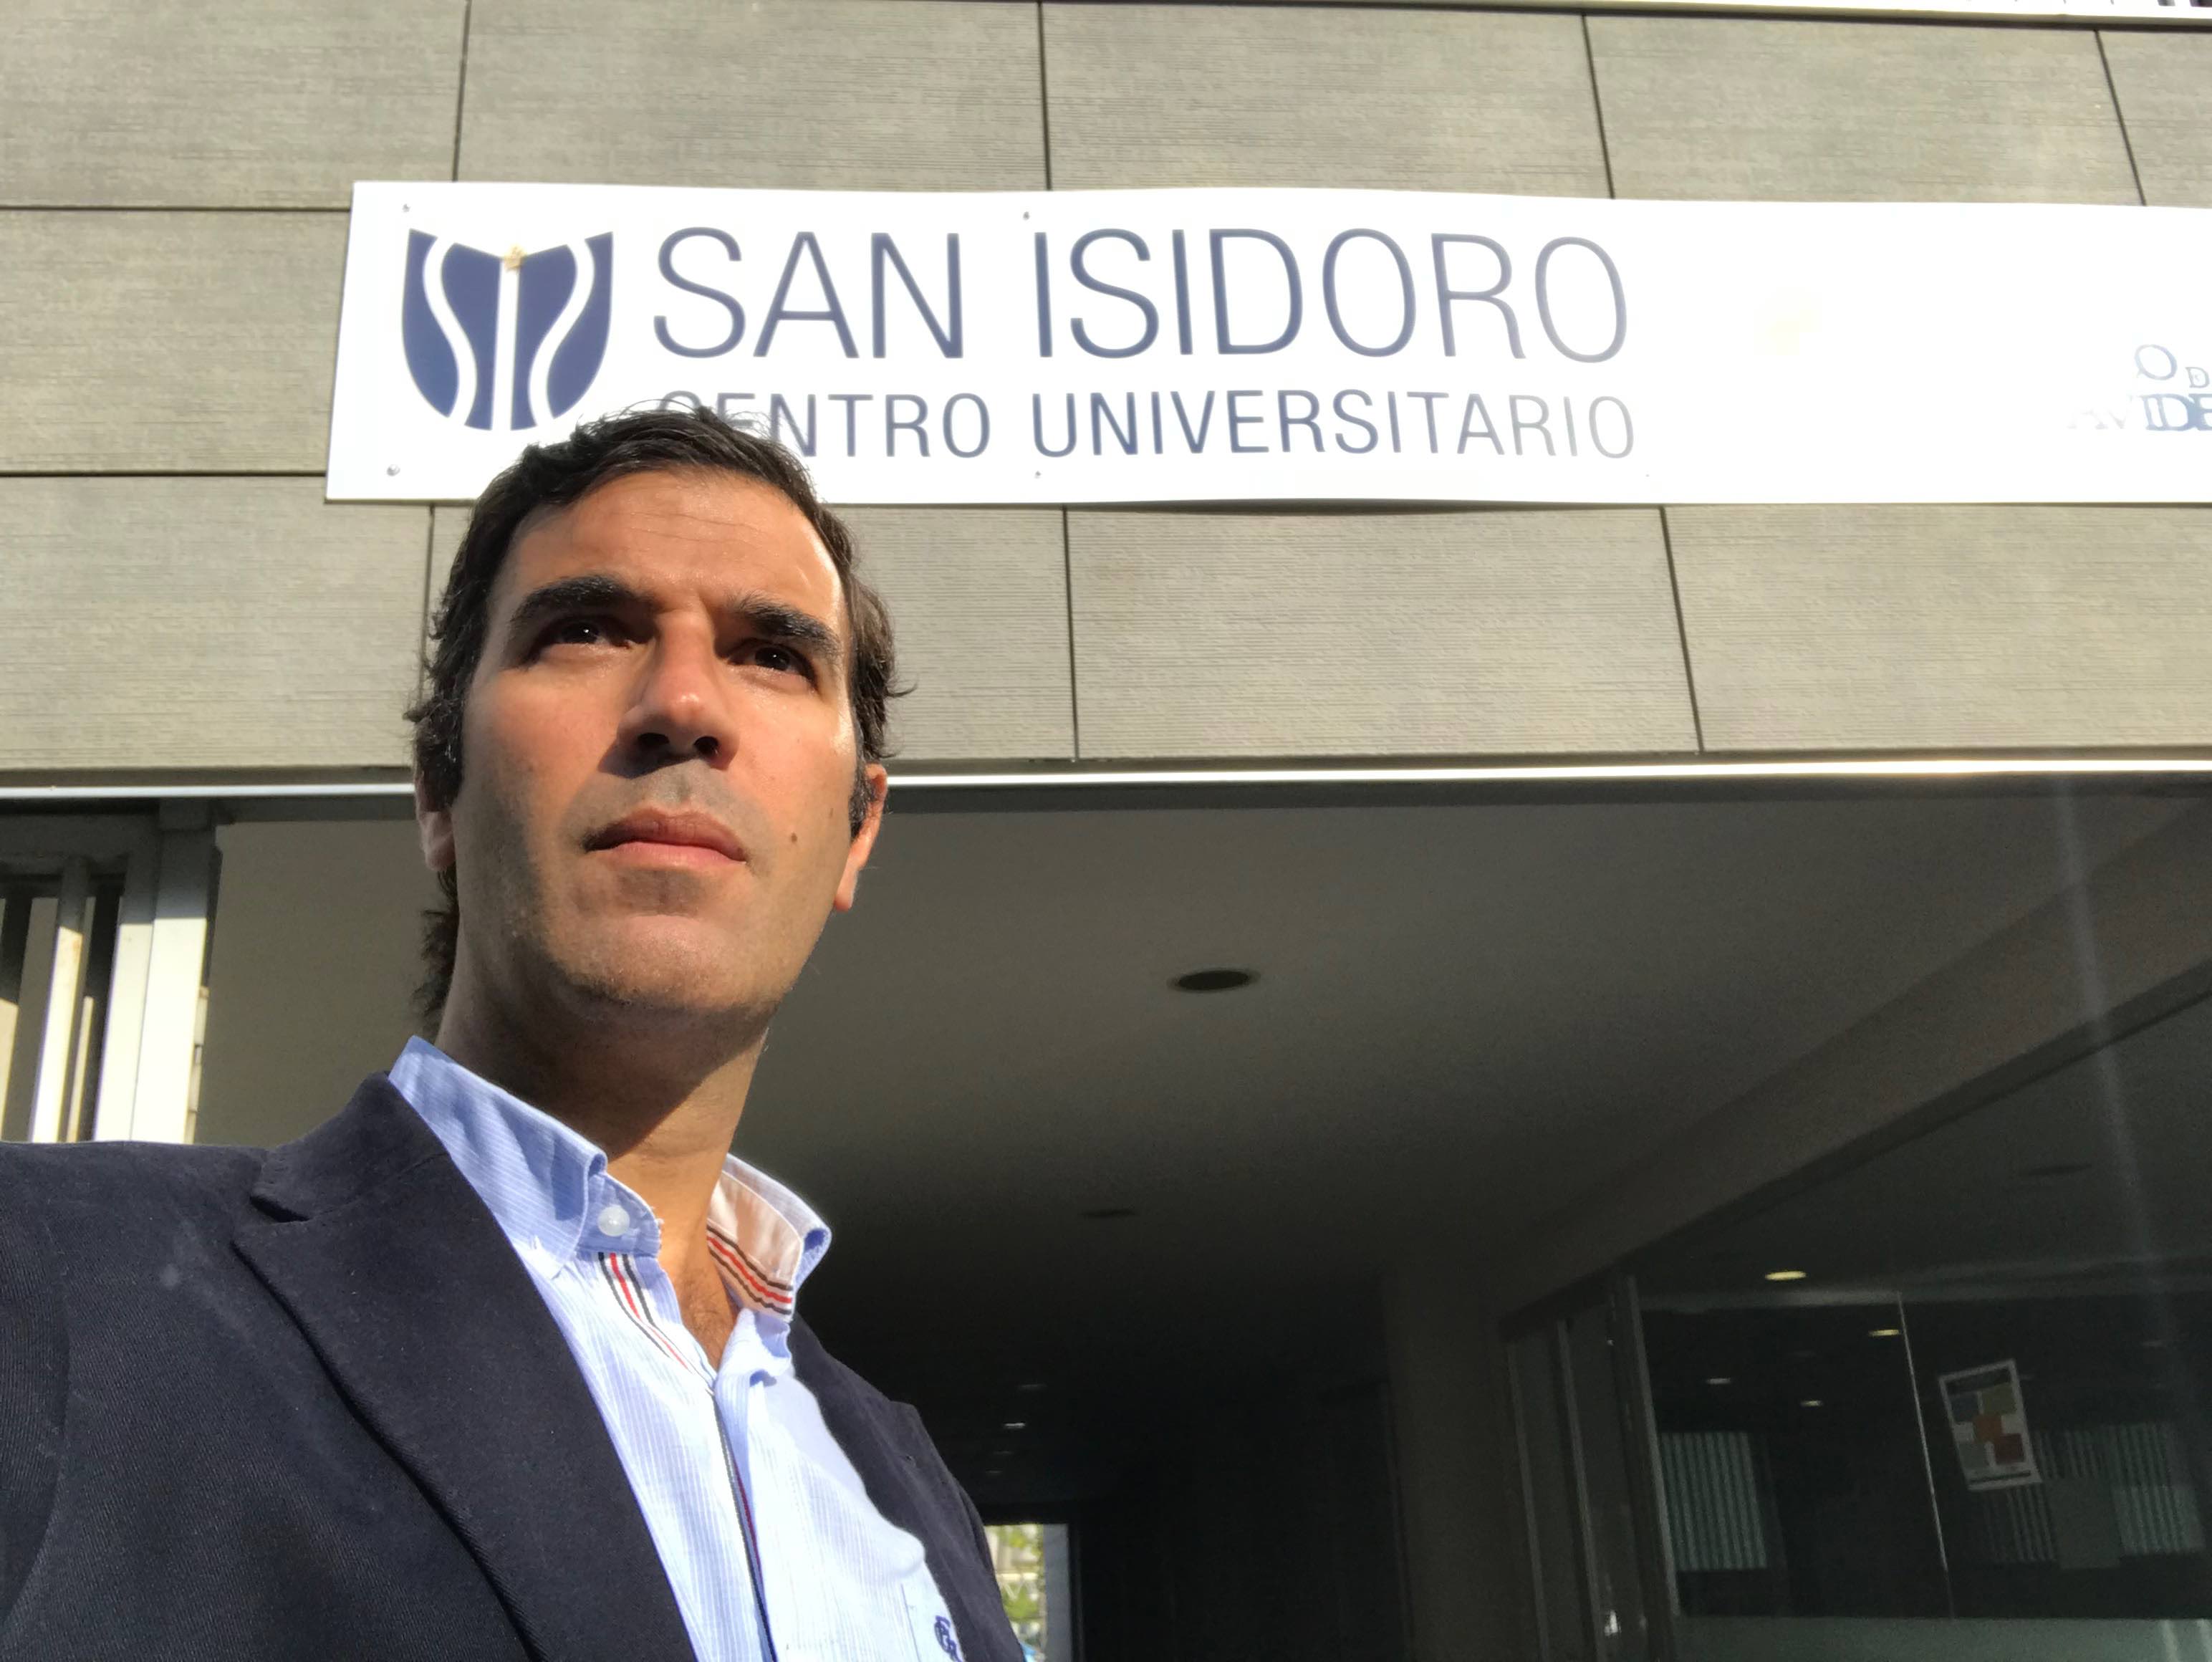 En este momento estás viendo El Dr Bernáldez , Profesor del Grado de Fisioterapia en la UNIVERSIDAD SAN ISIDORO (CEADE) de Sevilla